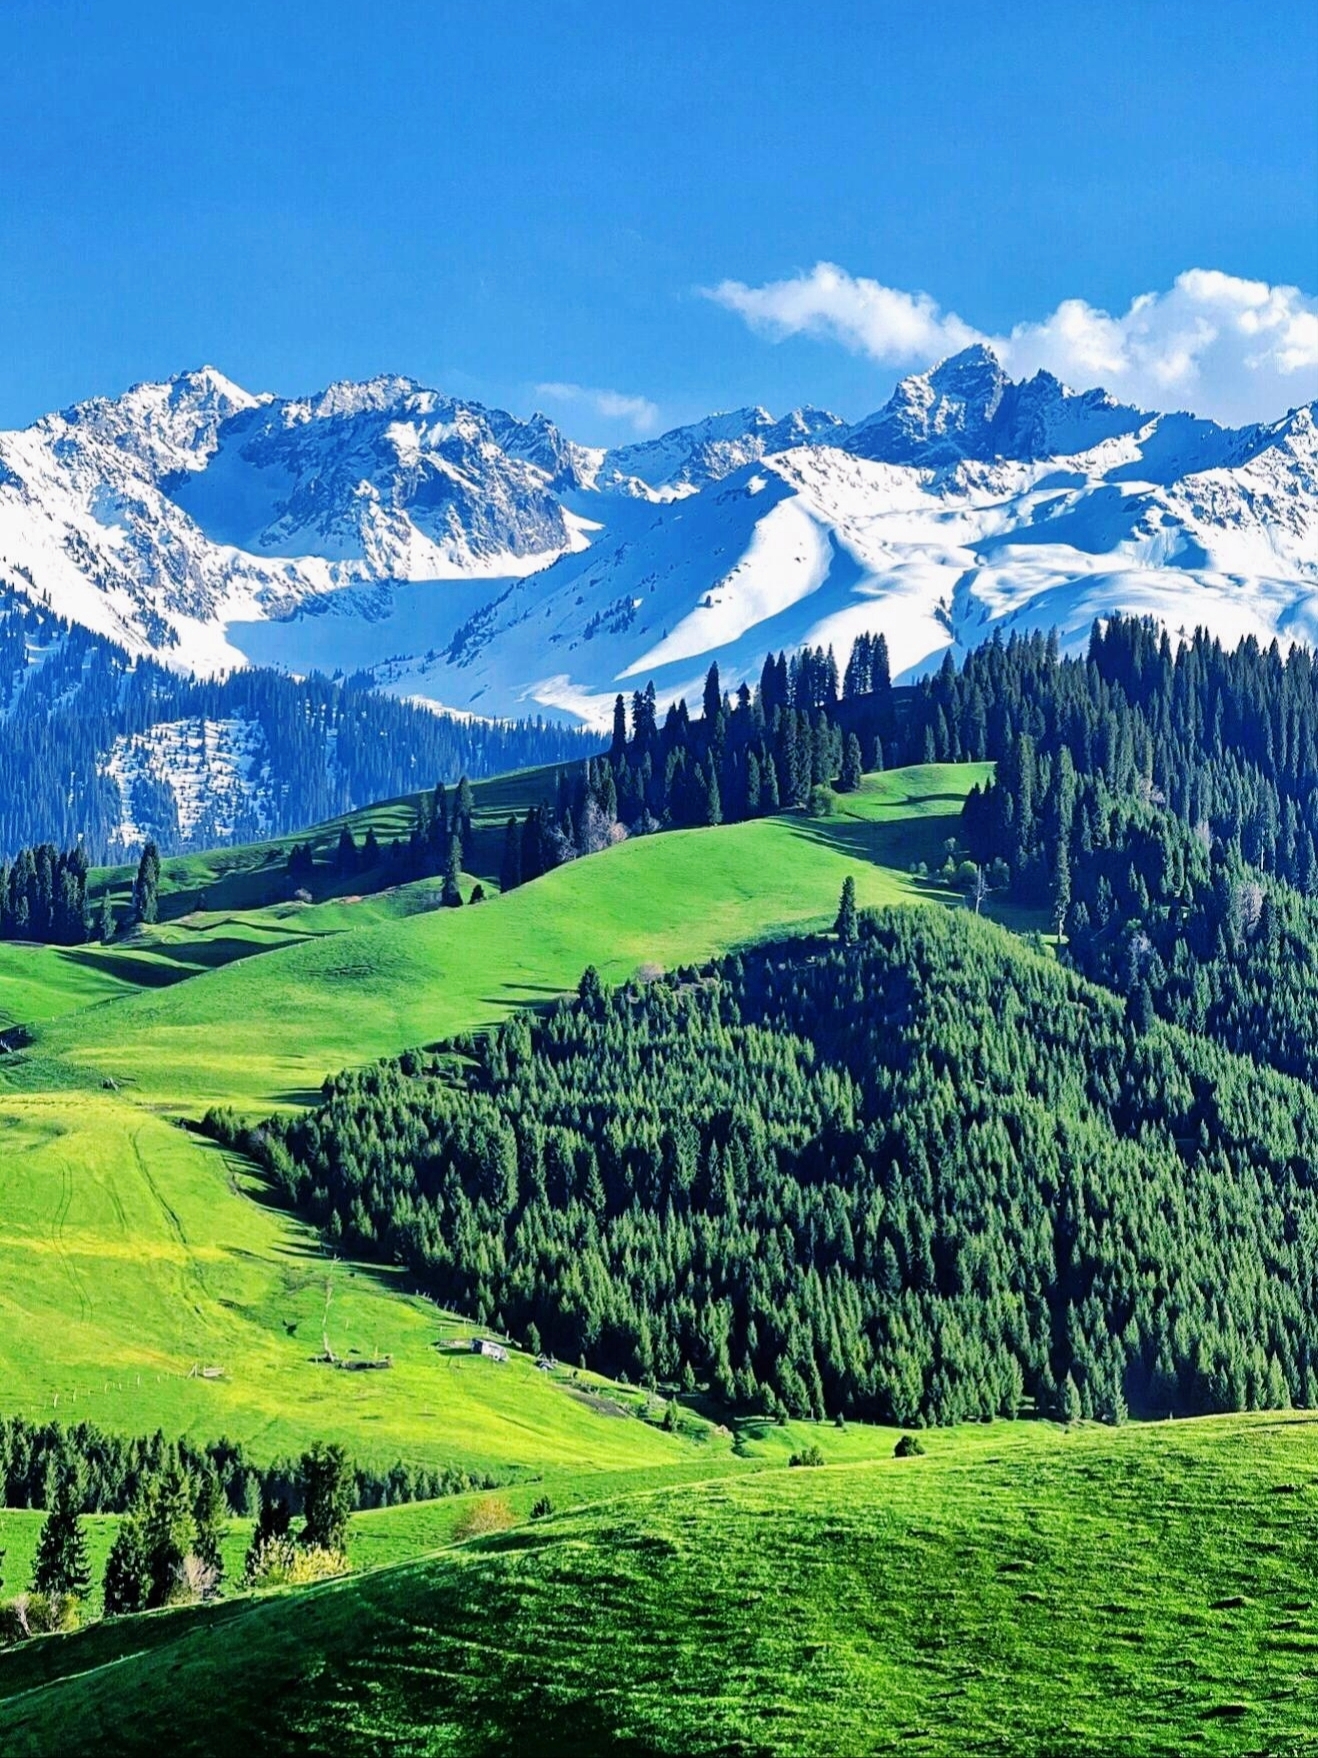 因为夏天的新疆伊犁真的是太美啦🍃 在那里可以看到👇👇 潺潺的💦溪流、绿油油的草原、洁白的雪山，五颜六